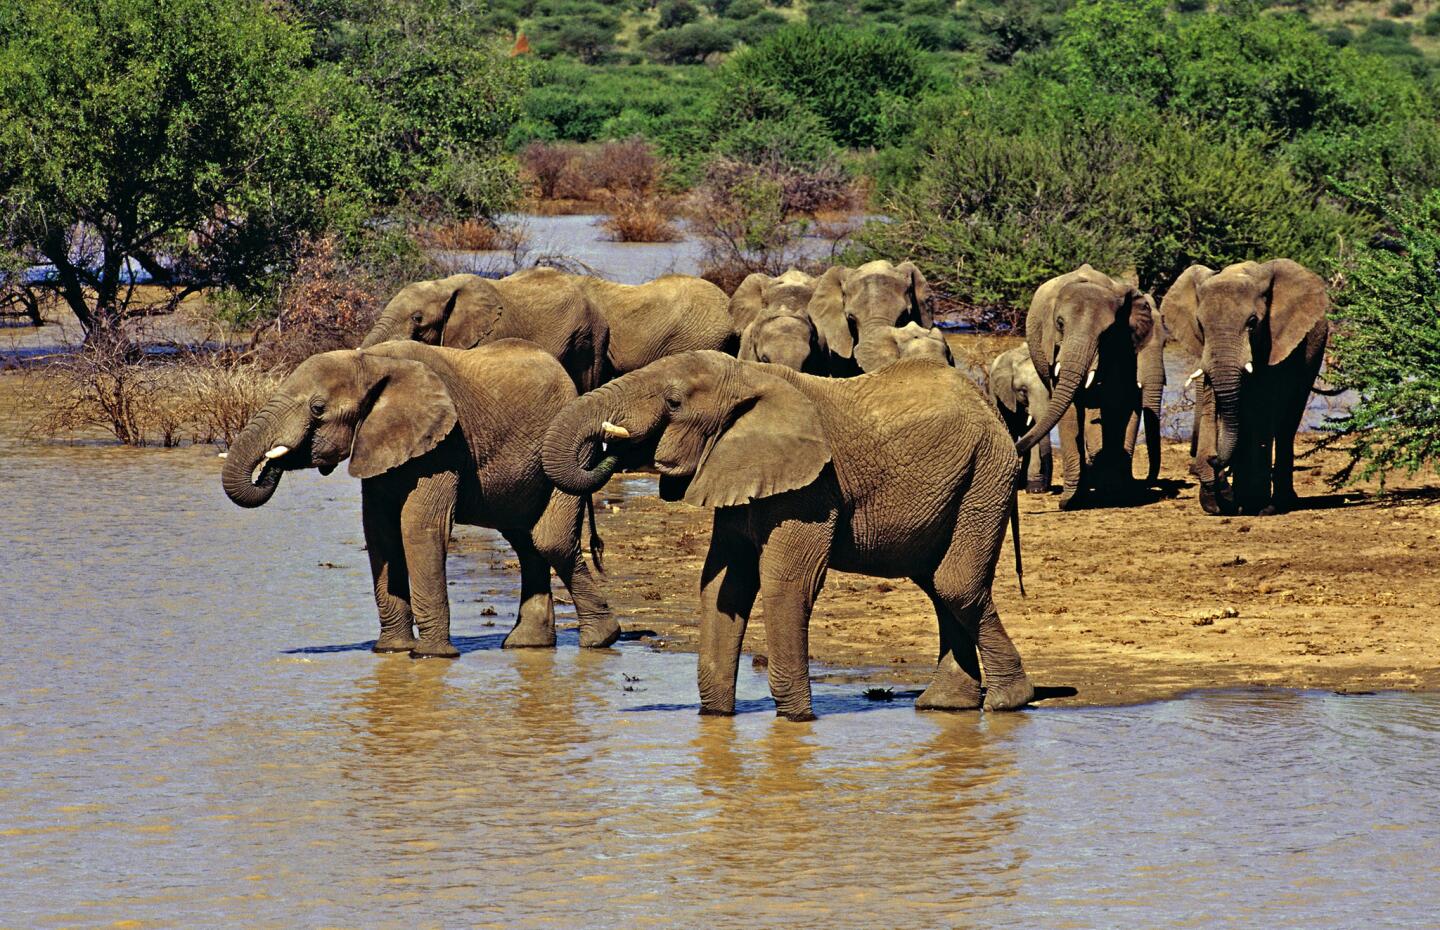 Elephants in Etosha National Park in Namibia.